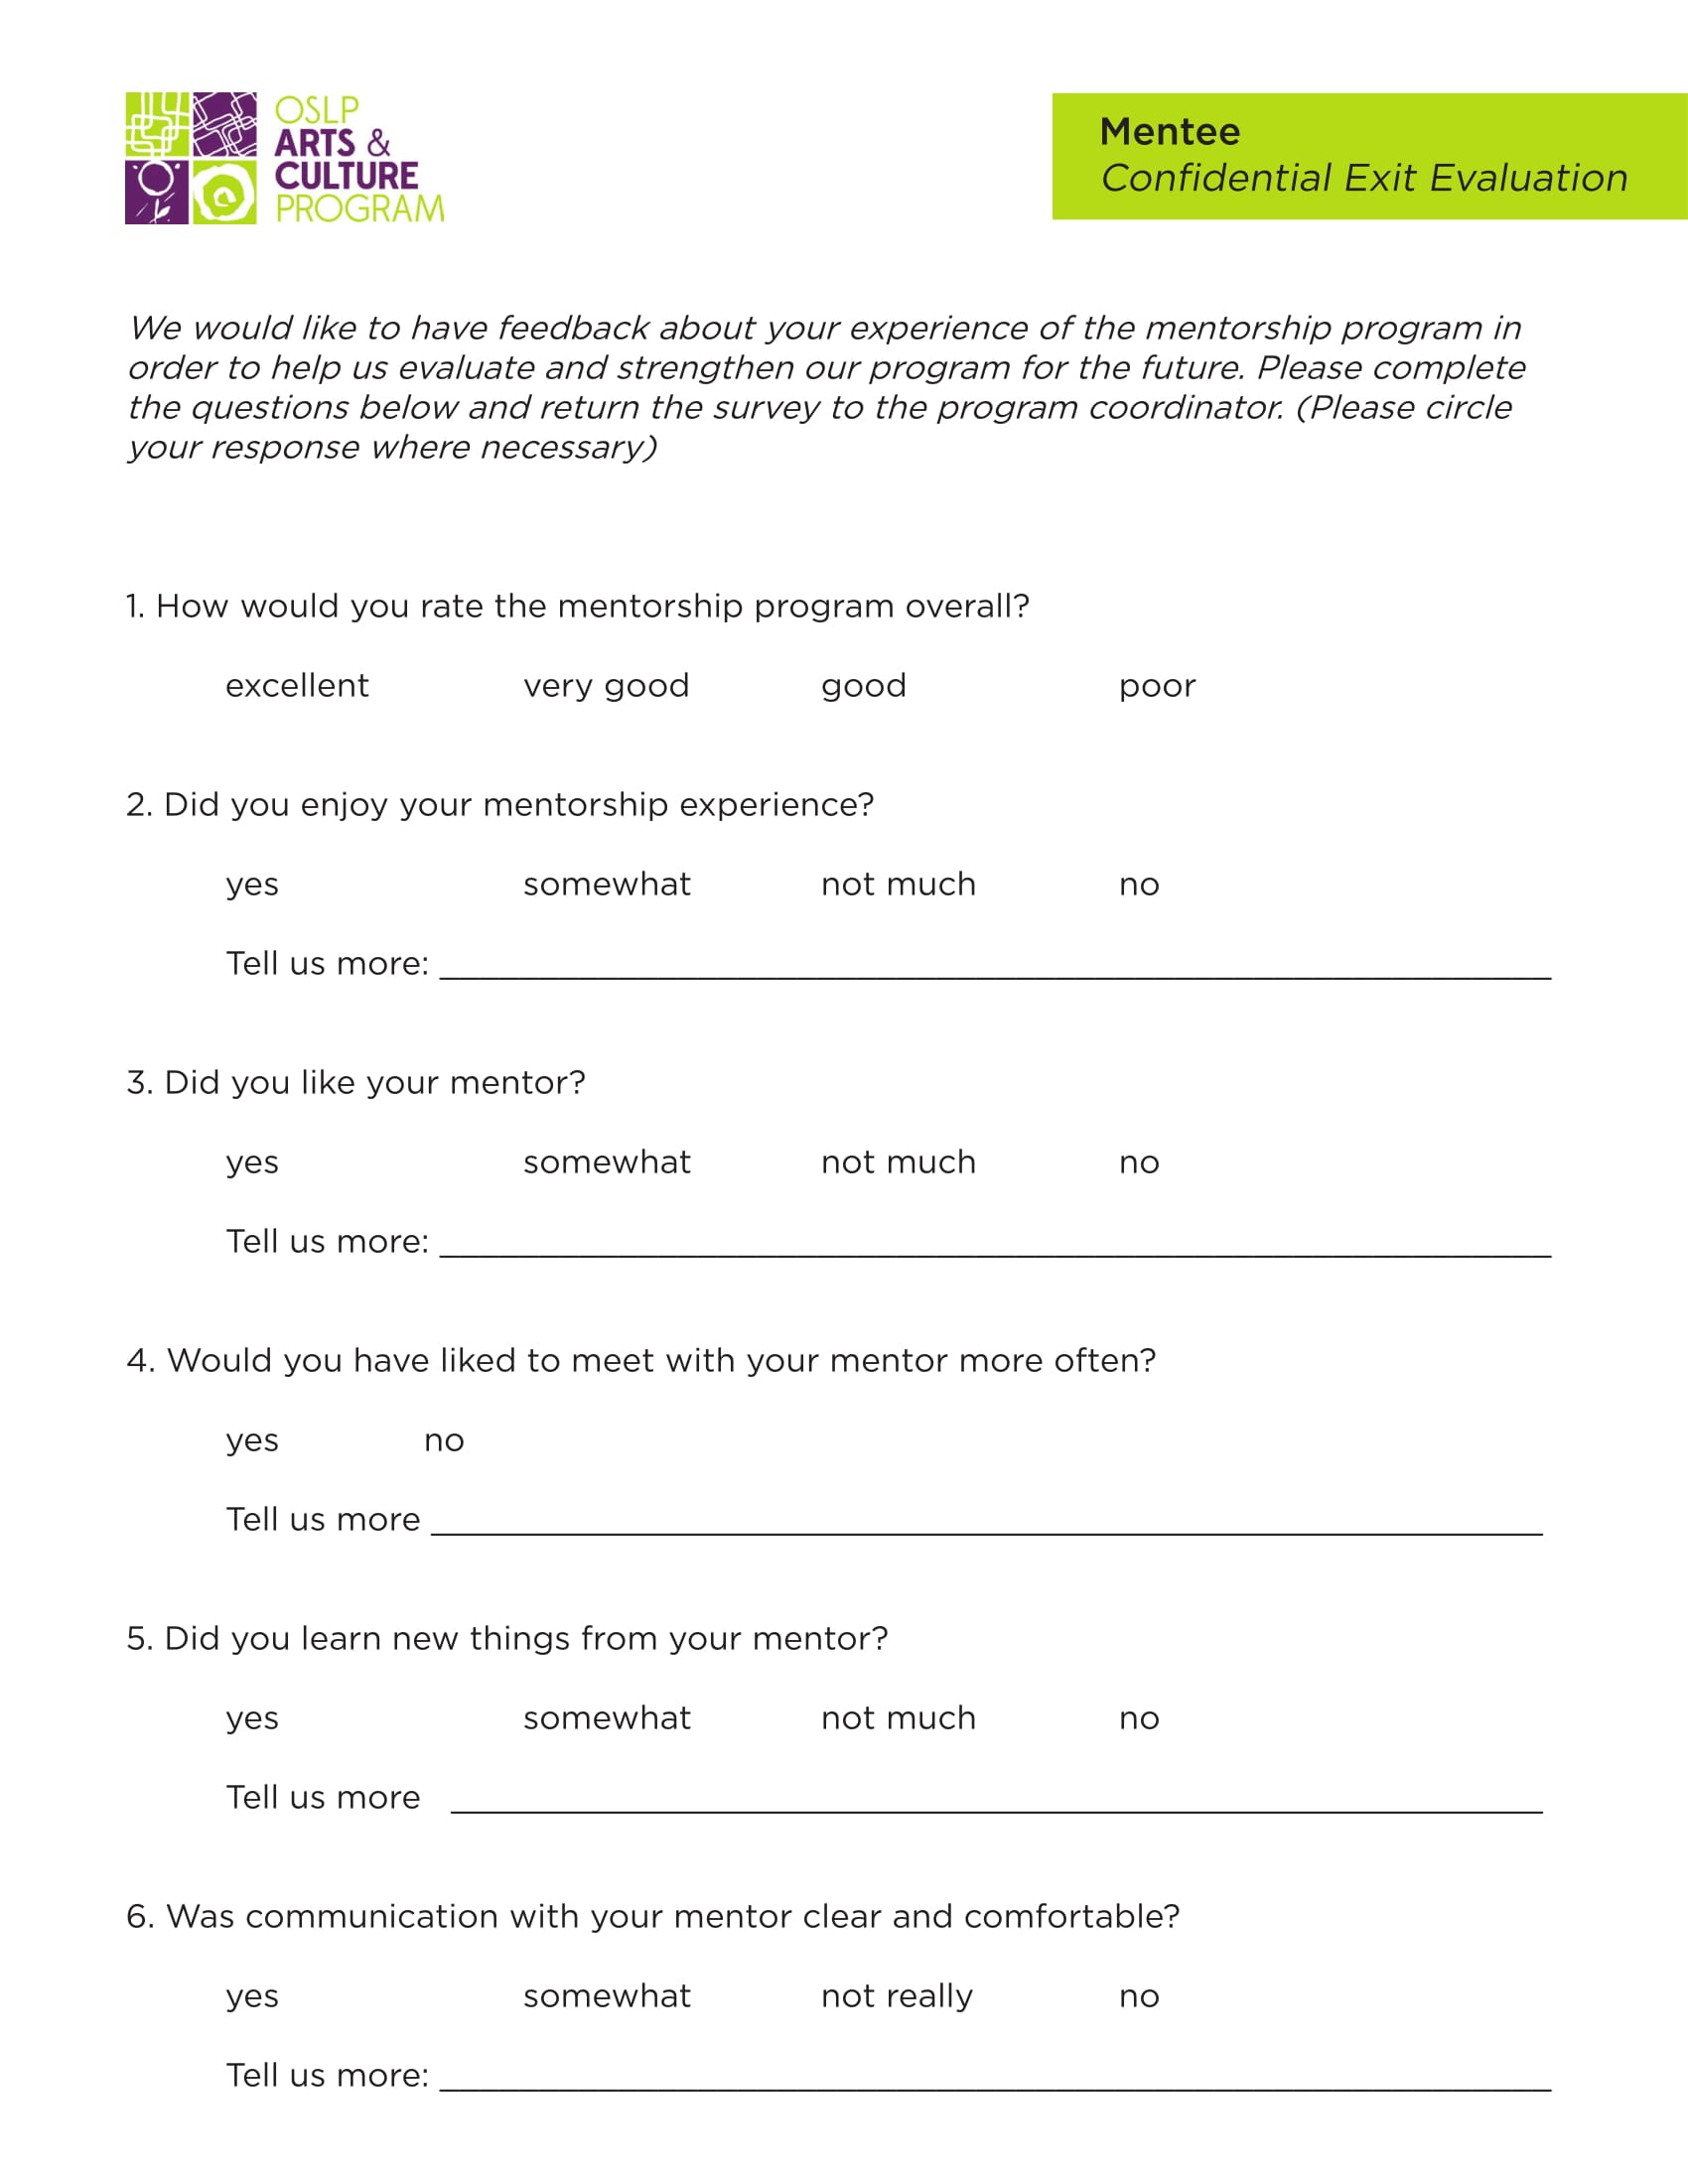 mentee confidential exit evaluation form 12